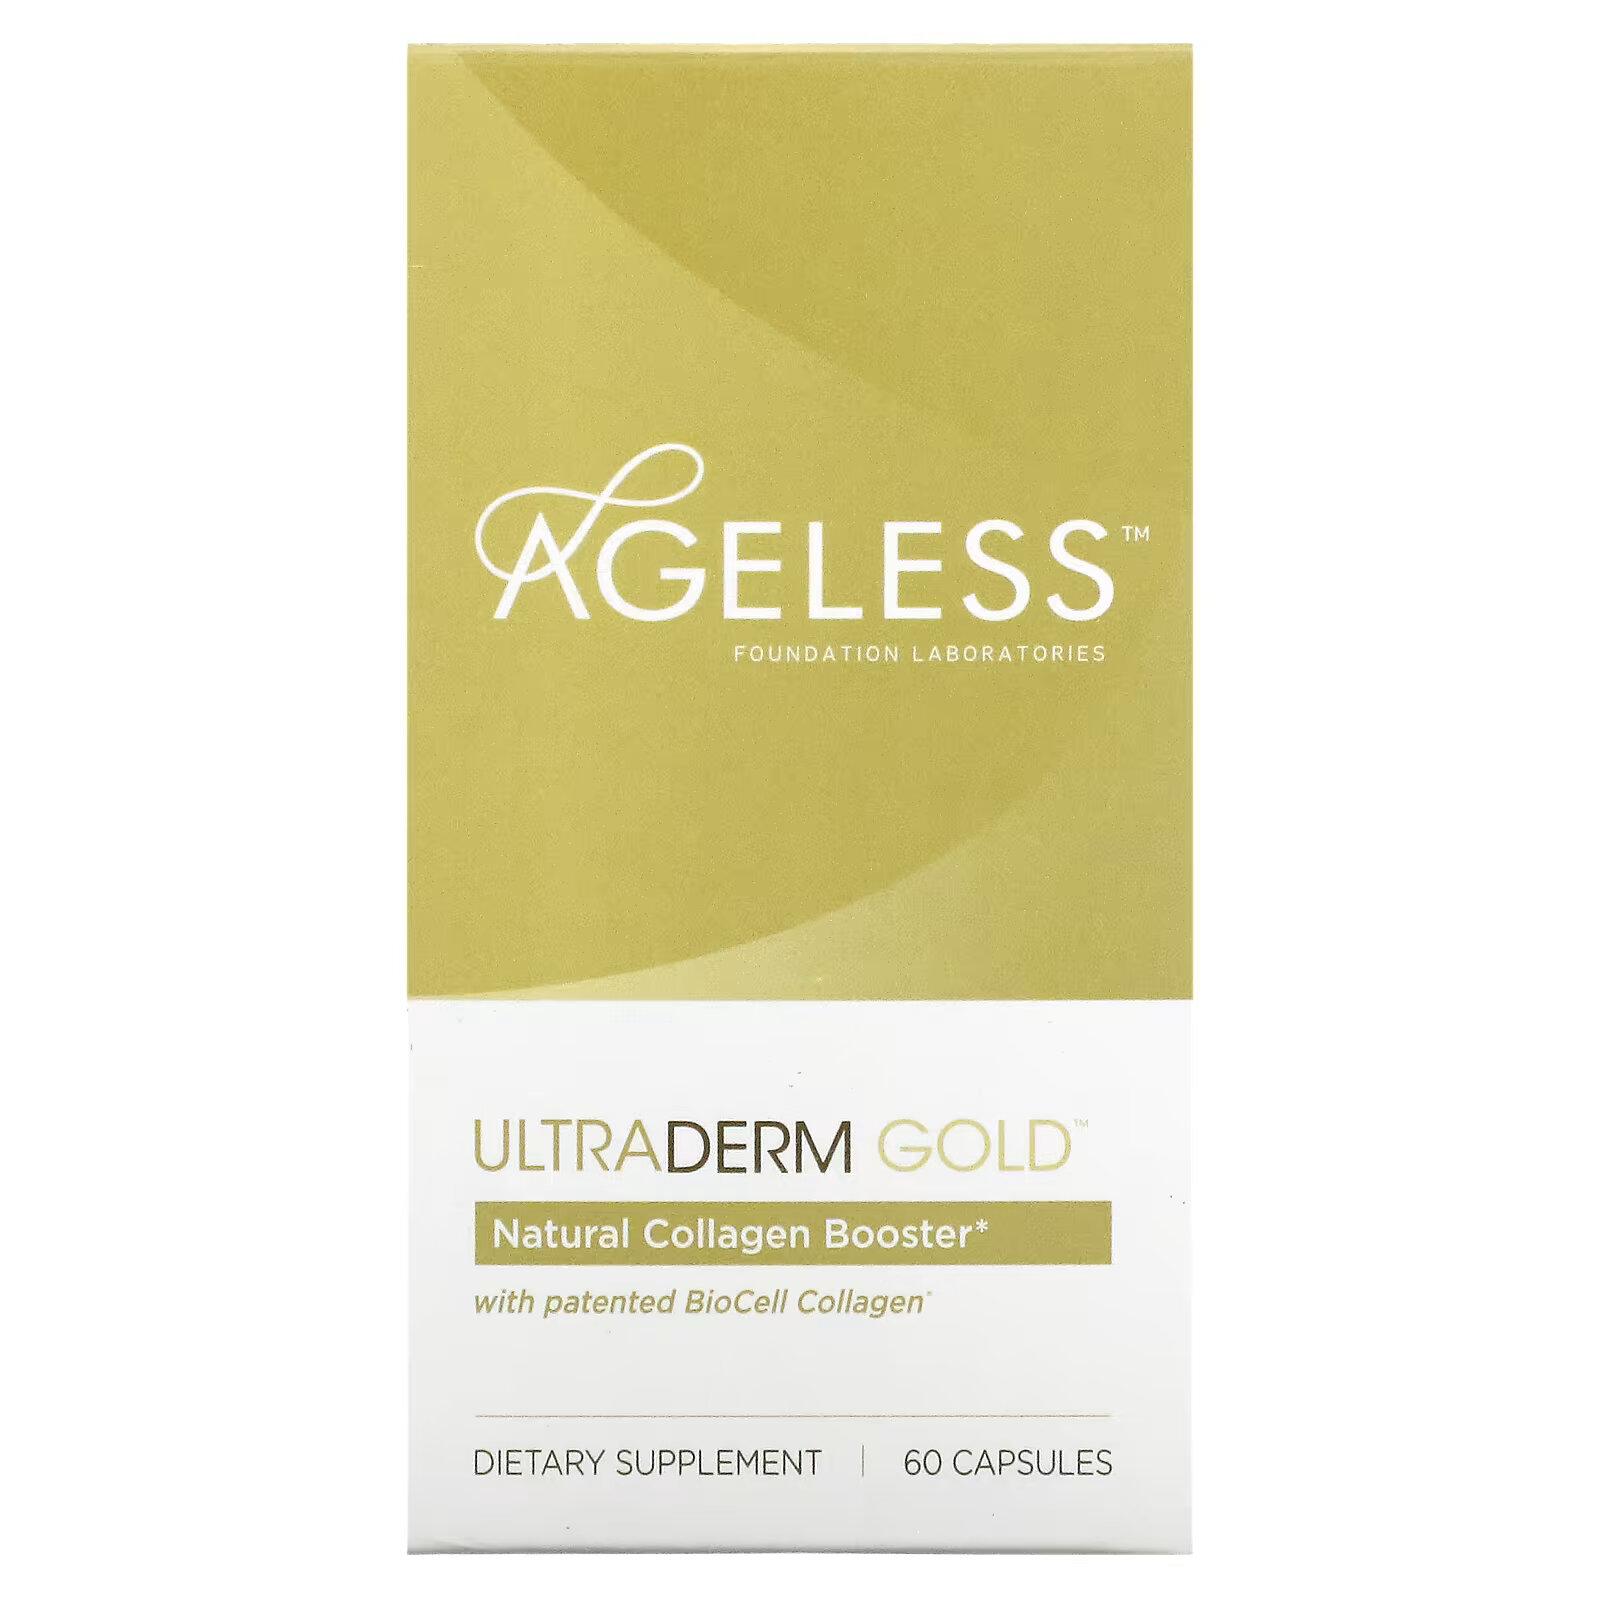 Ageless Foundation Laboratories, UltraDerm Gold, натуральная коллагеновая поддержка с запатентованным коллагеном BioCell, 60 капсул фото